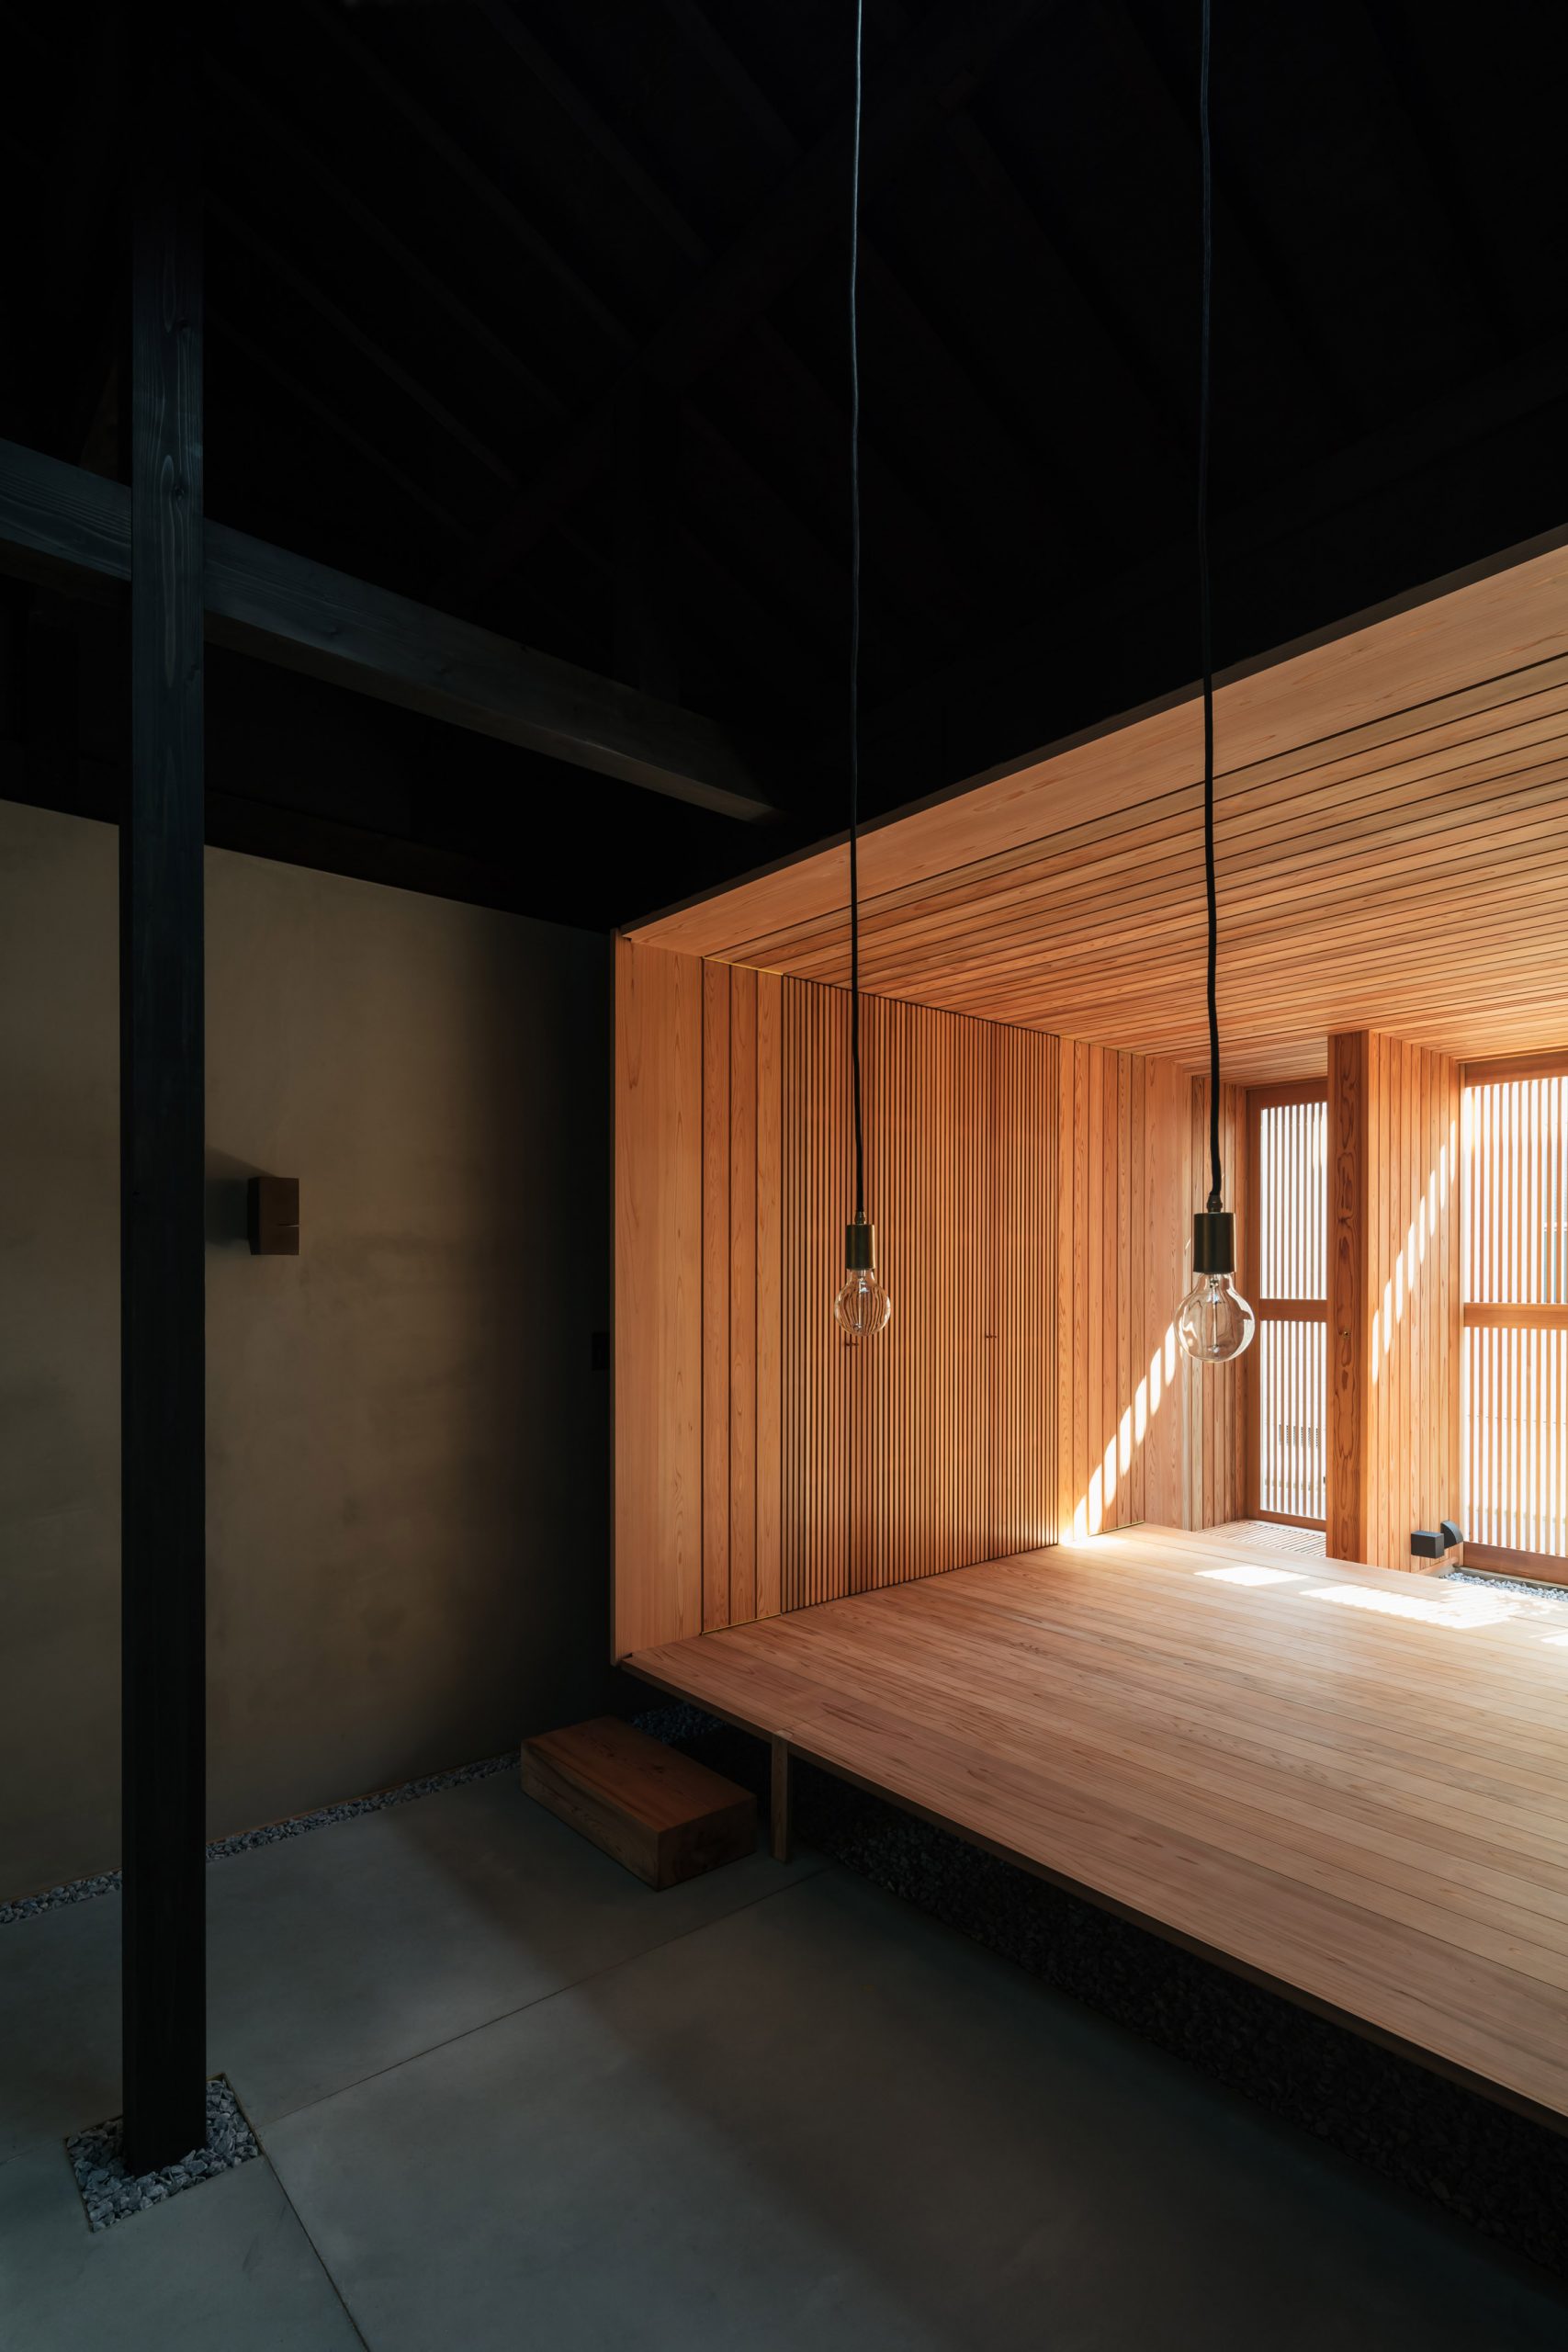 A cedar room inside a dark Japanese house